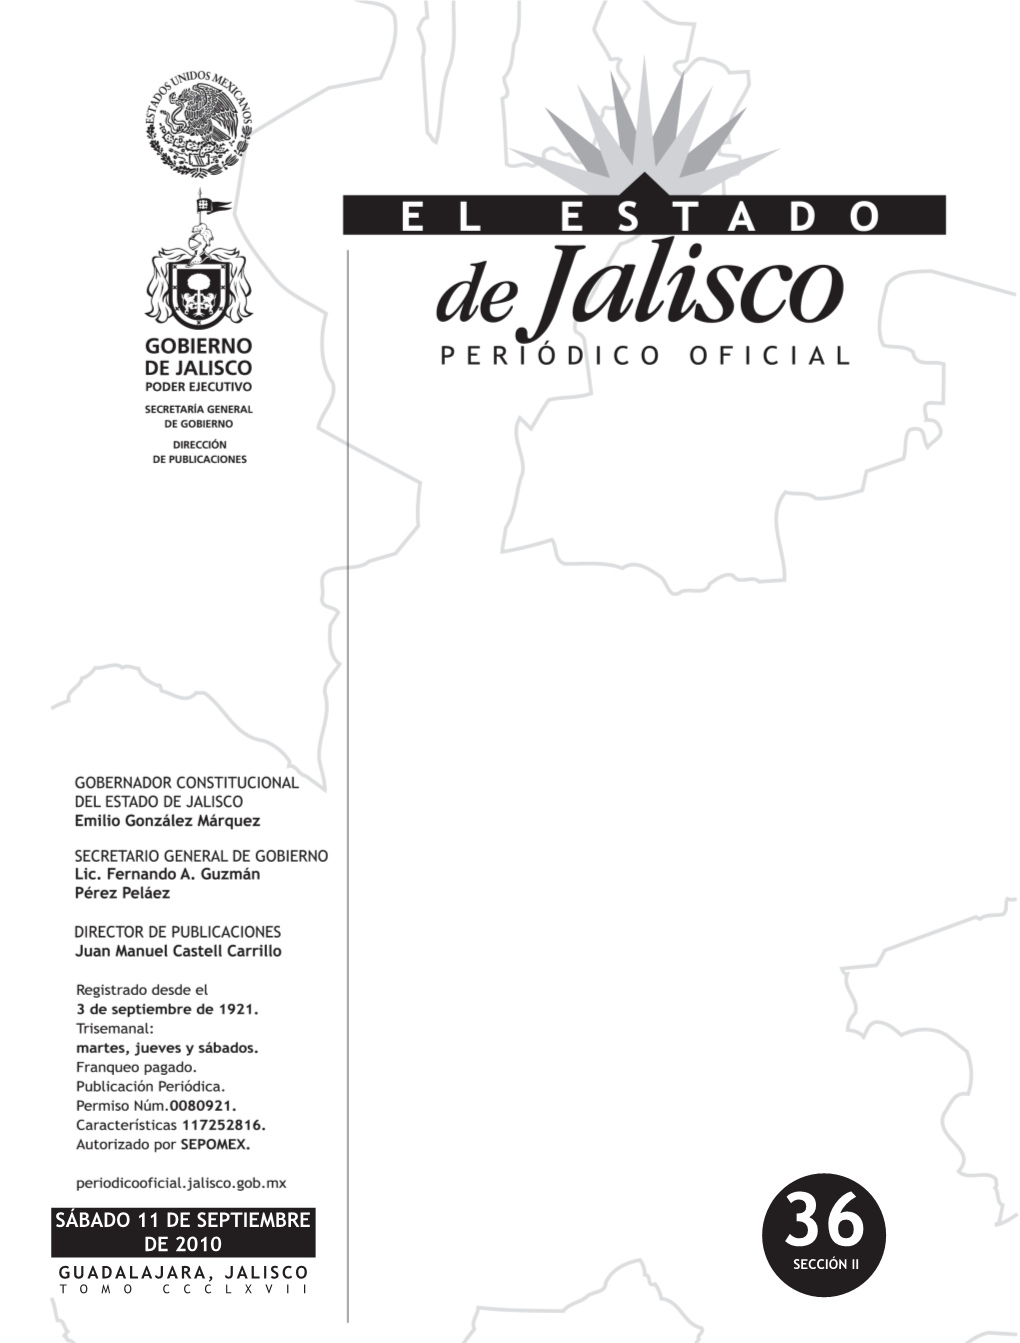 Sábado 11 De Septiembre De 2010 36 Guadalajara, Jalisco Sección Ii Tomo Ccclxvii Gobernador Constitucional Del Estado De Jalisco C.P